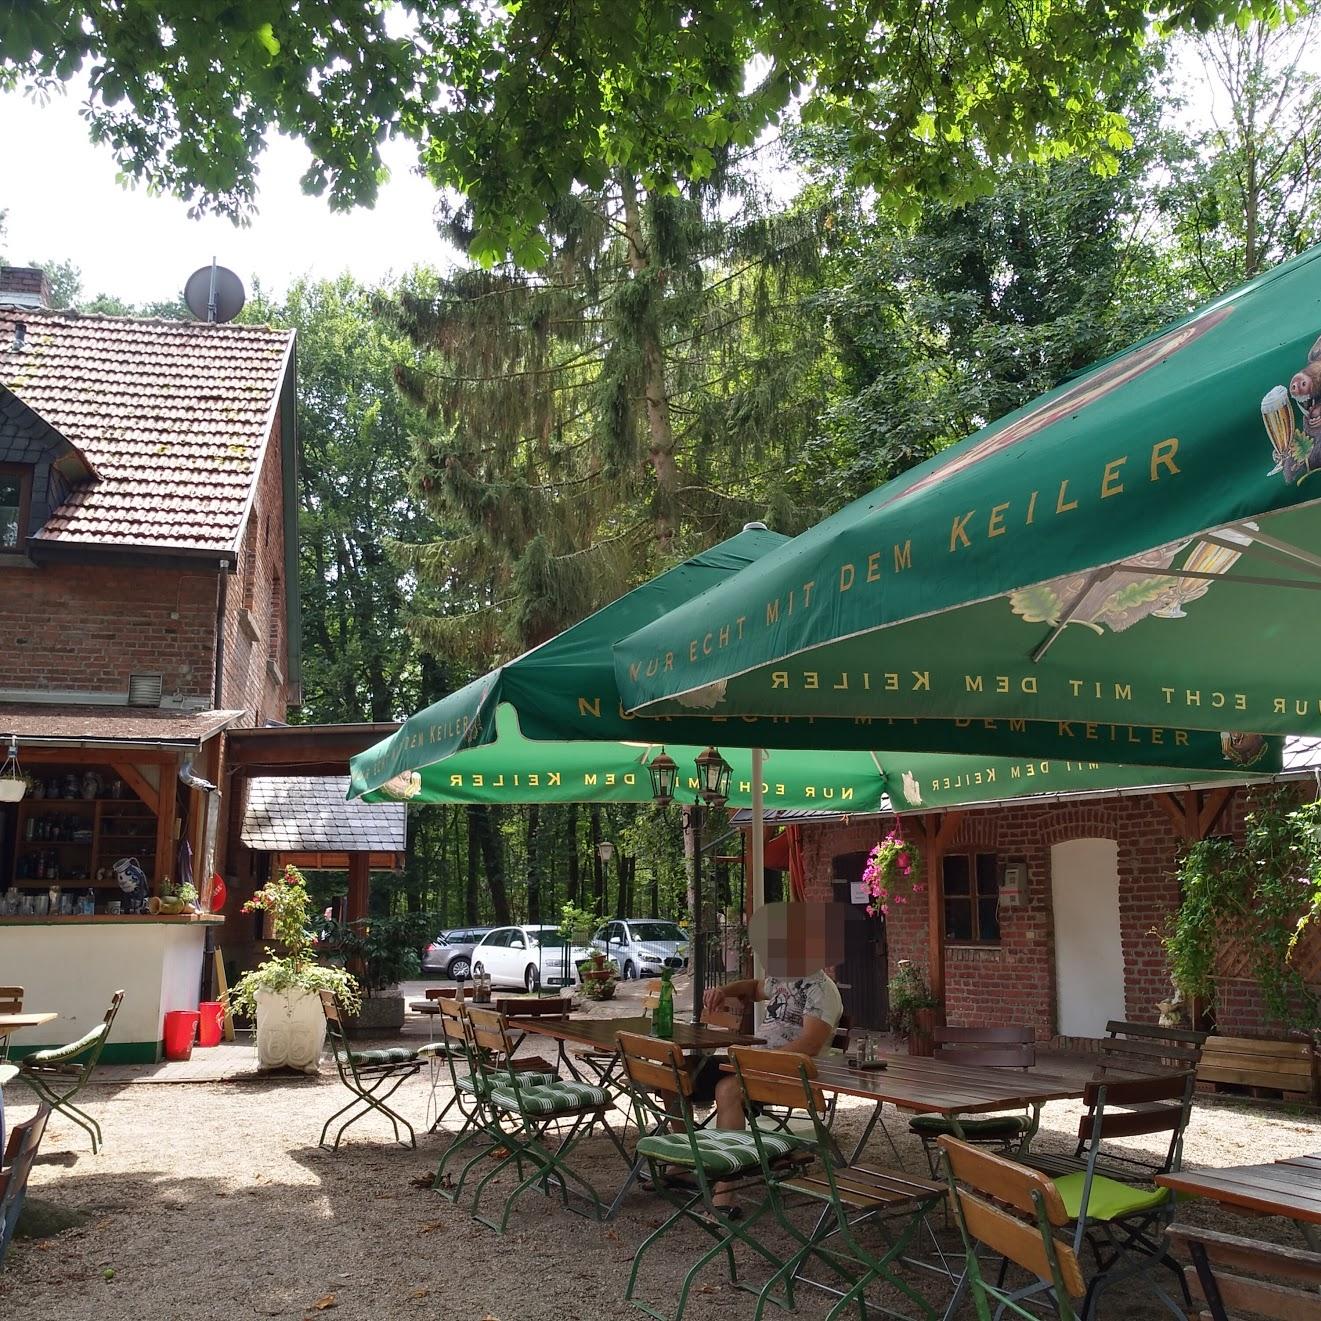 Restaurant "Gaststätte Tannenhof" in  Hainburg